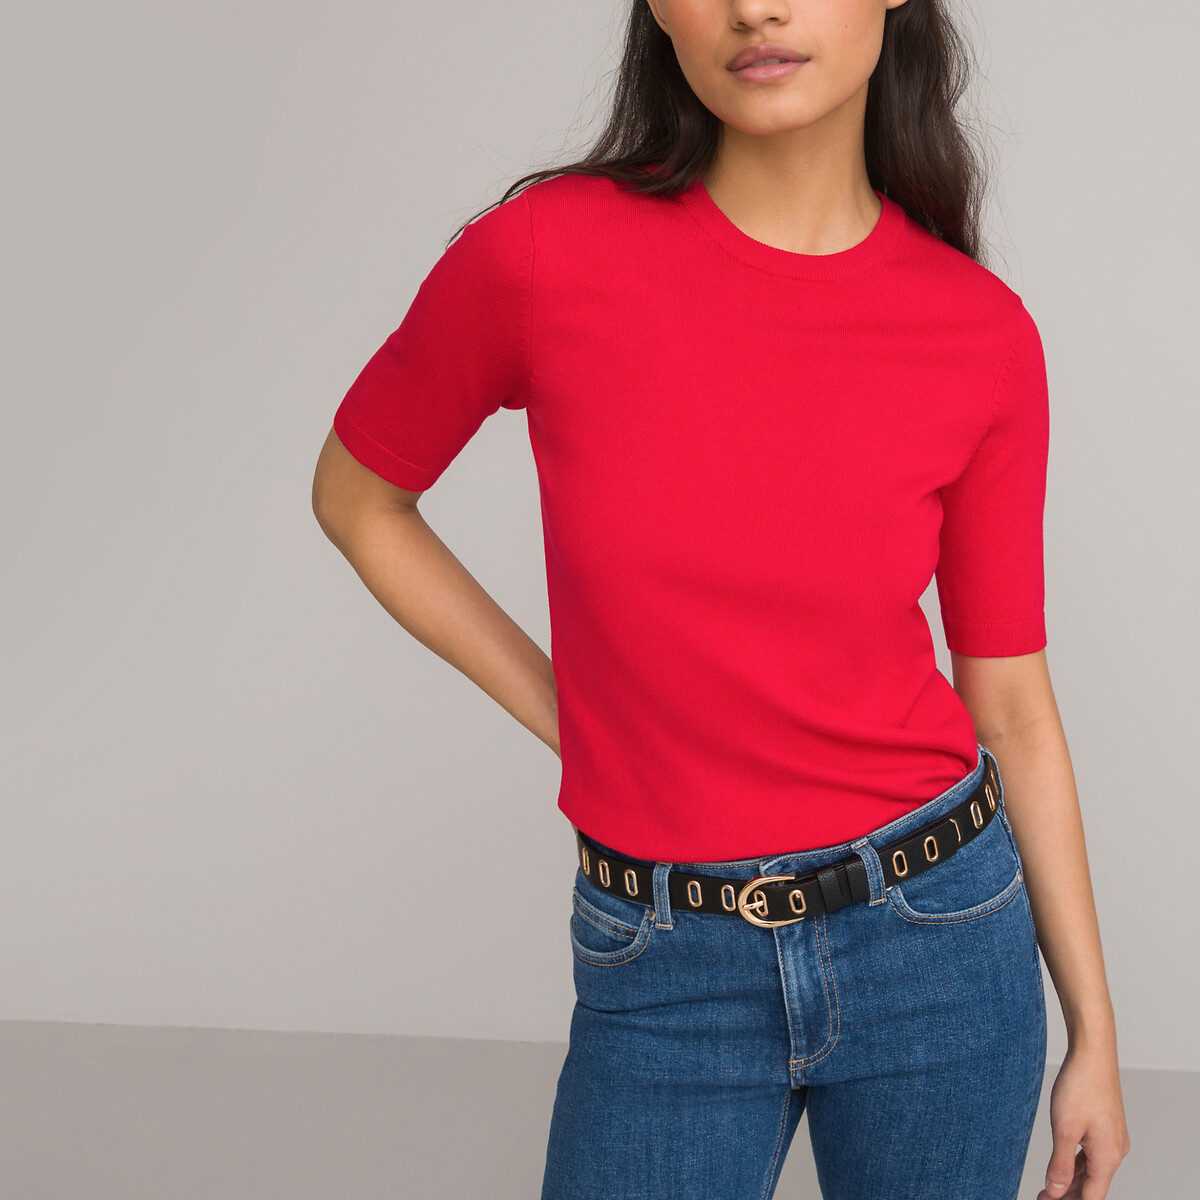 Пуловер Базовый с короткими рукавами S красный LaRedoute, размер S - фото 1